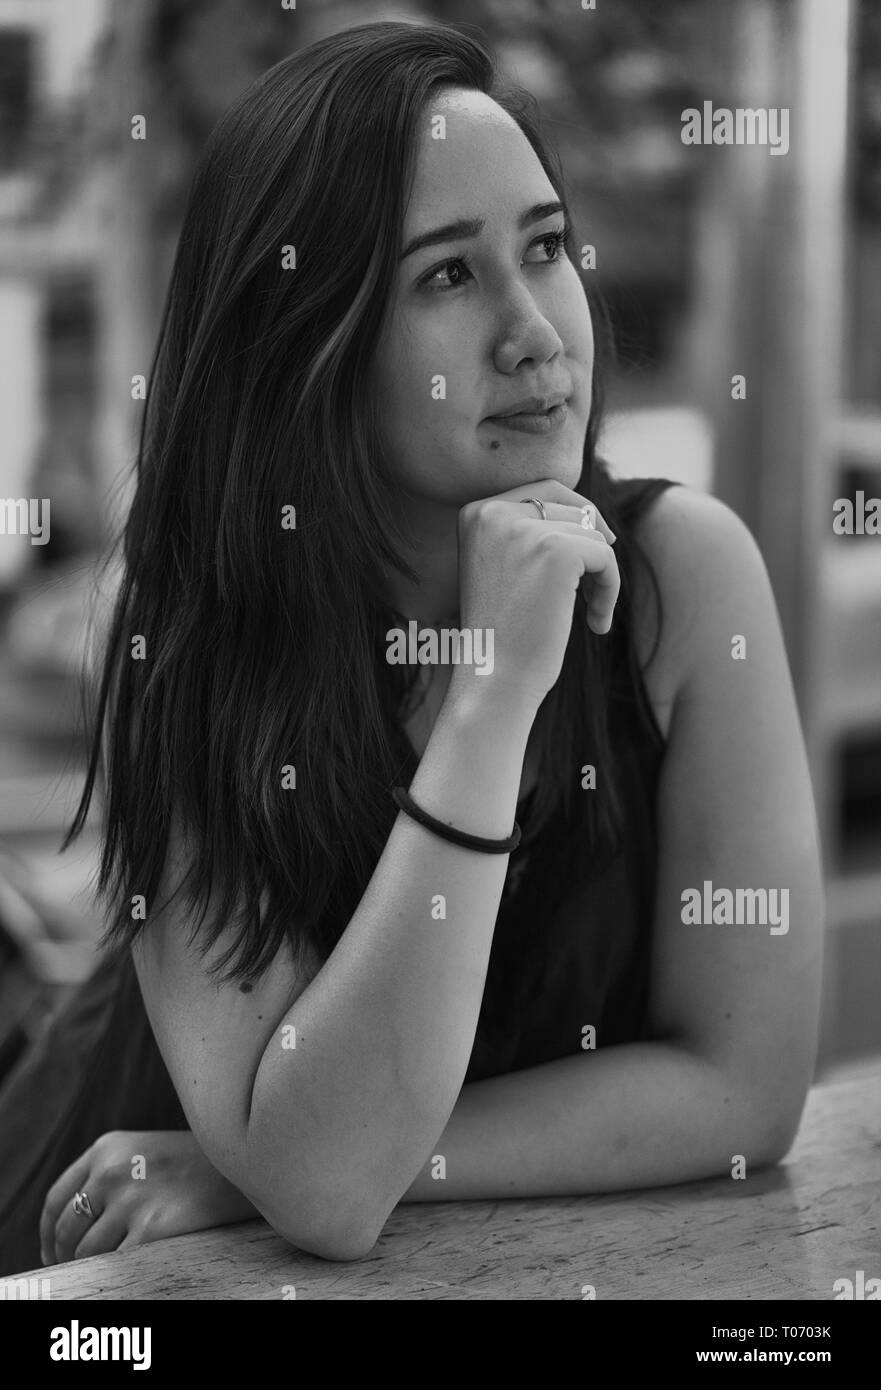 Ein wunderschönes Mädchen, das im Café sitzt und träumt, schwarz-weiß Stockfoto